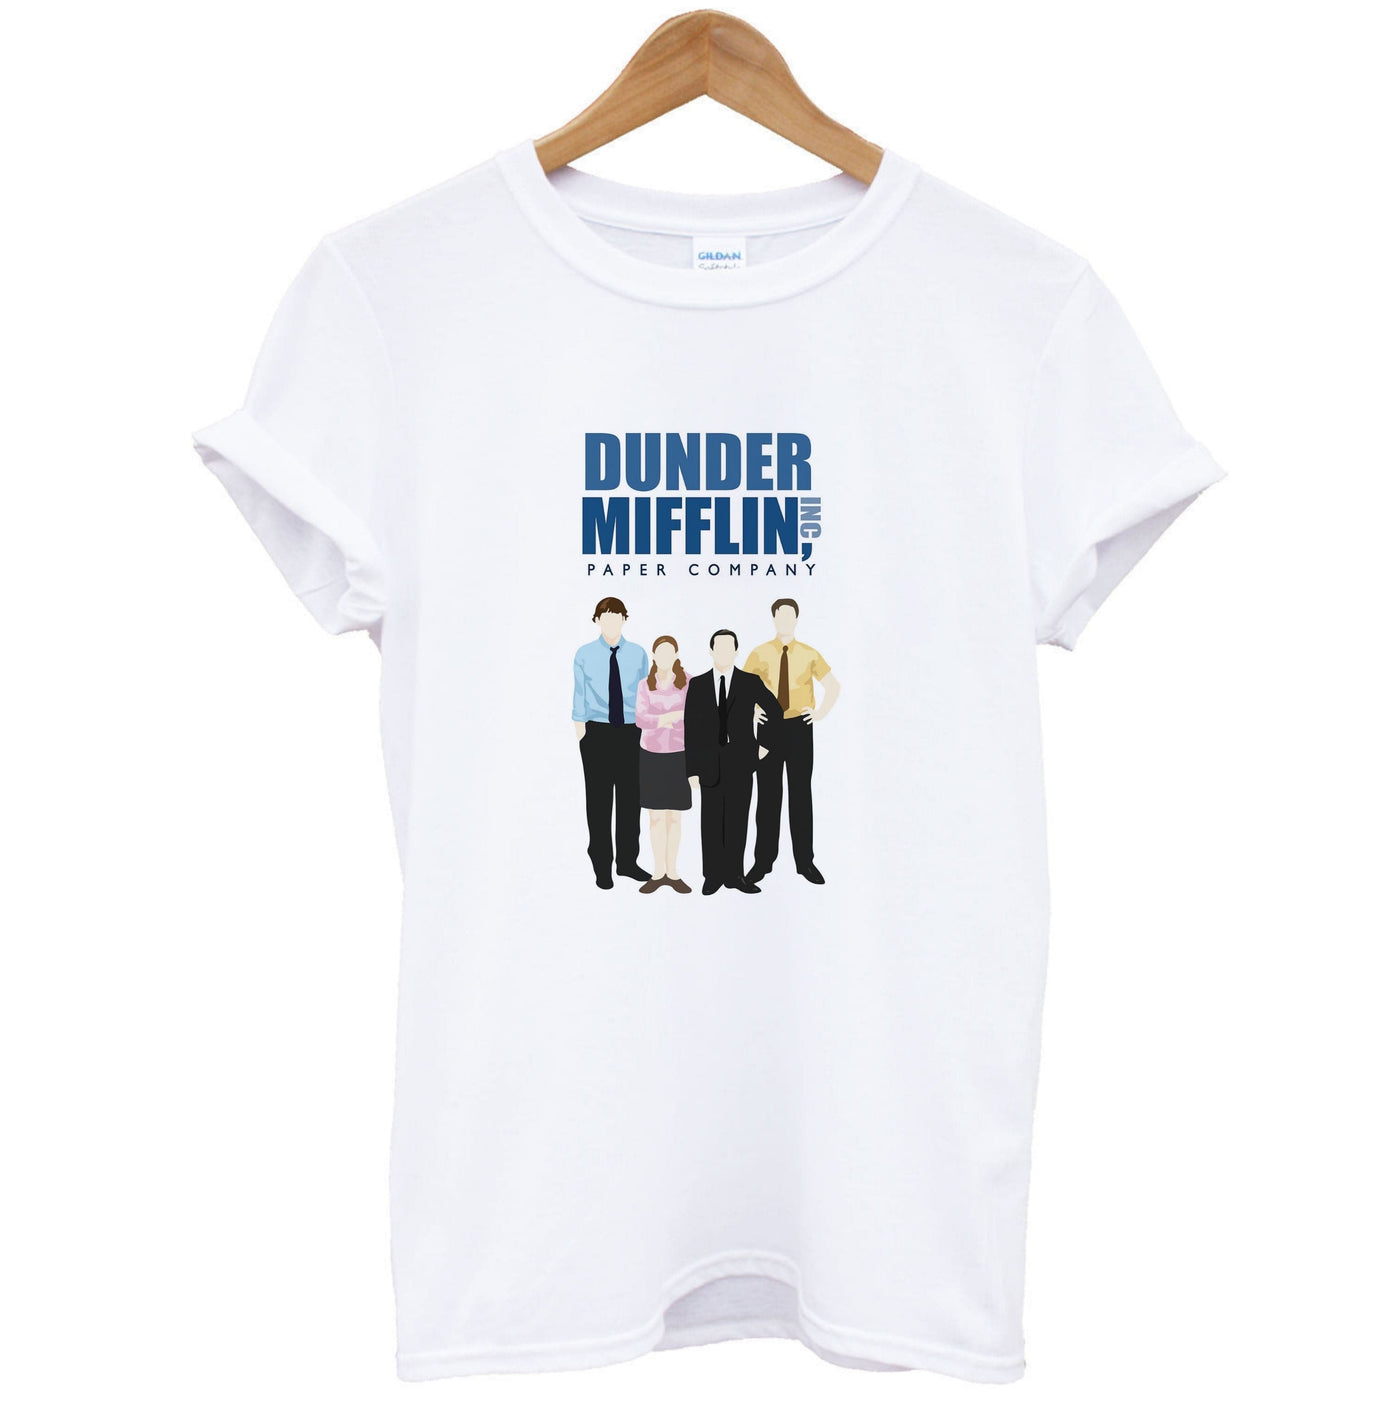 The Office Cartoon - Dunder Mifflin T-Shirt